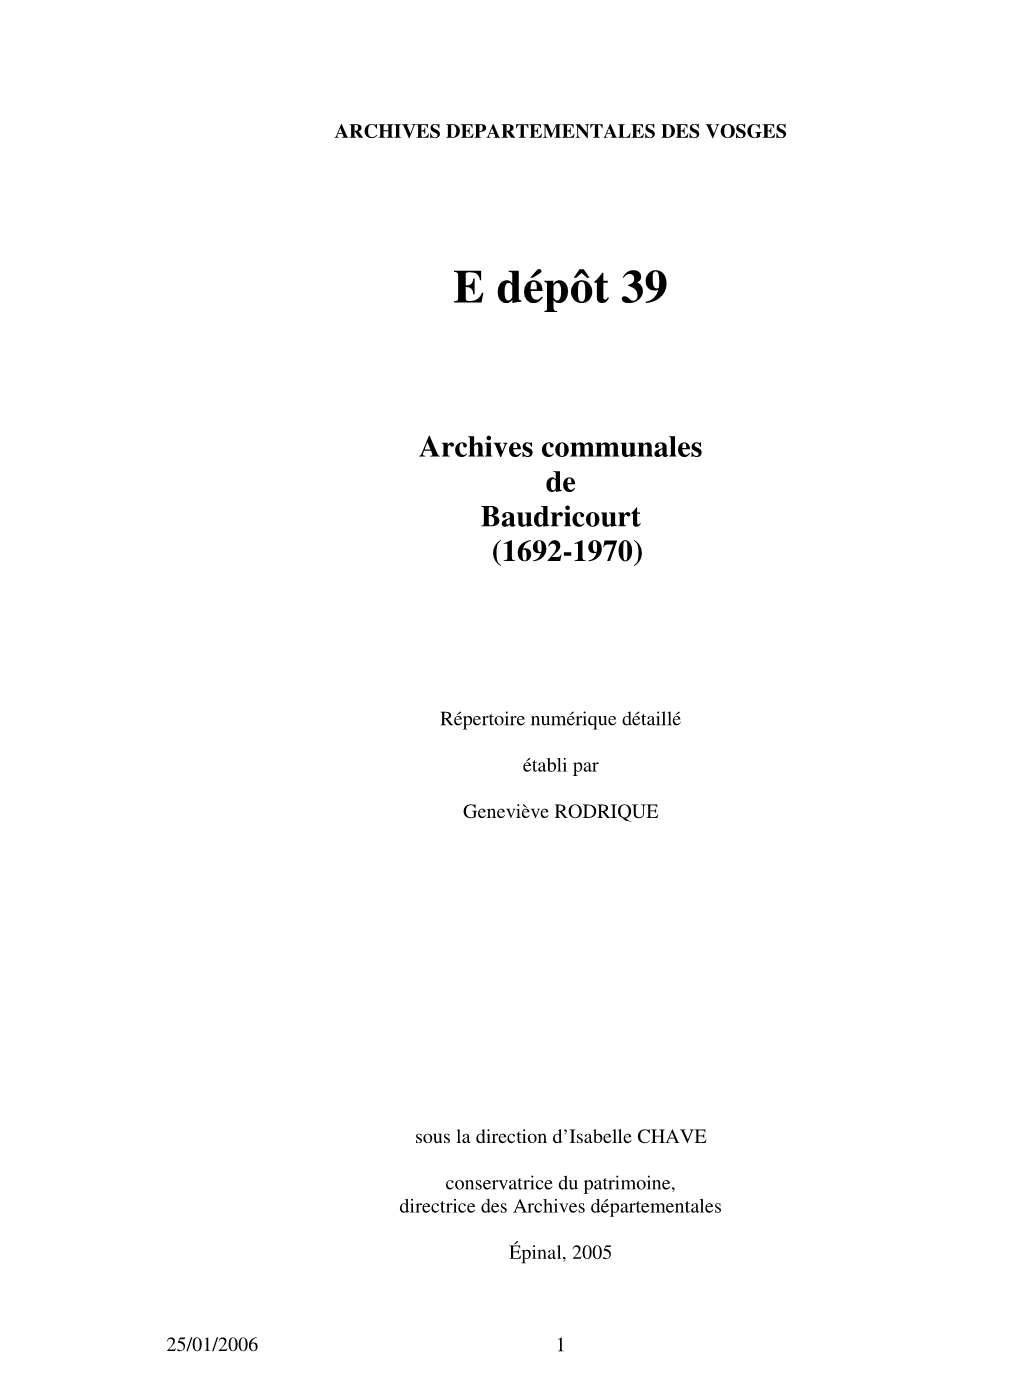 E Dépôt 39 Archives Communales De Baudricourt